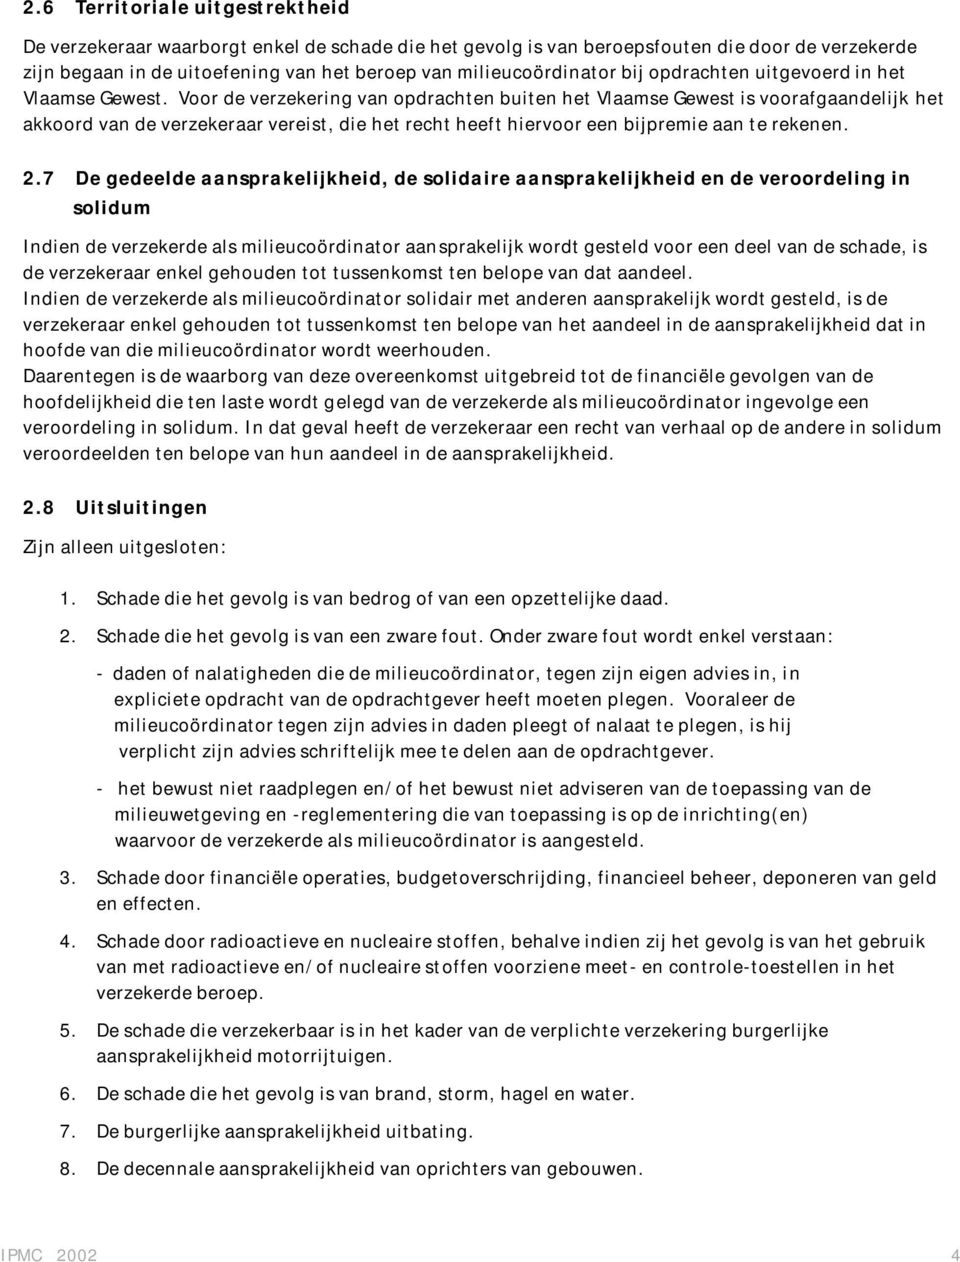 Voor de verzekering van opdrachten buiten het Vlaamse Gewest is voorafgaandelijk het akkoord van de verzekeraar vereist, die het recht heeft hiervoor een bijpremie aan te rekenen. 2.